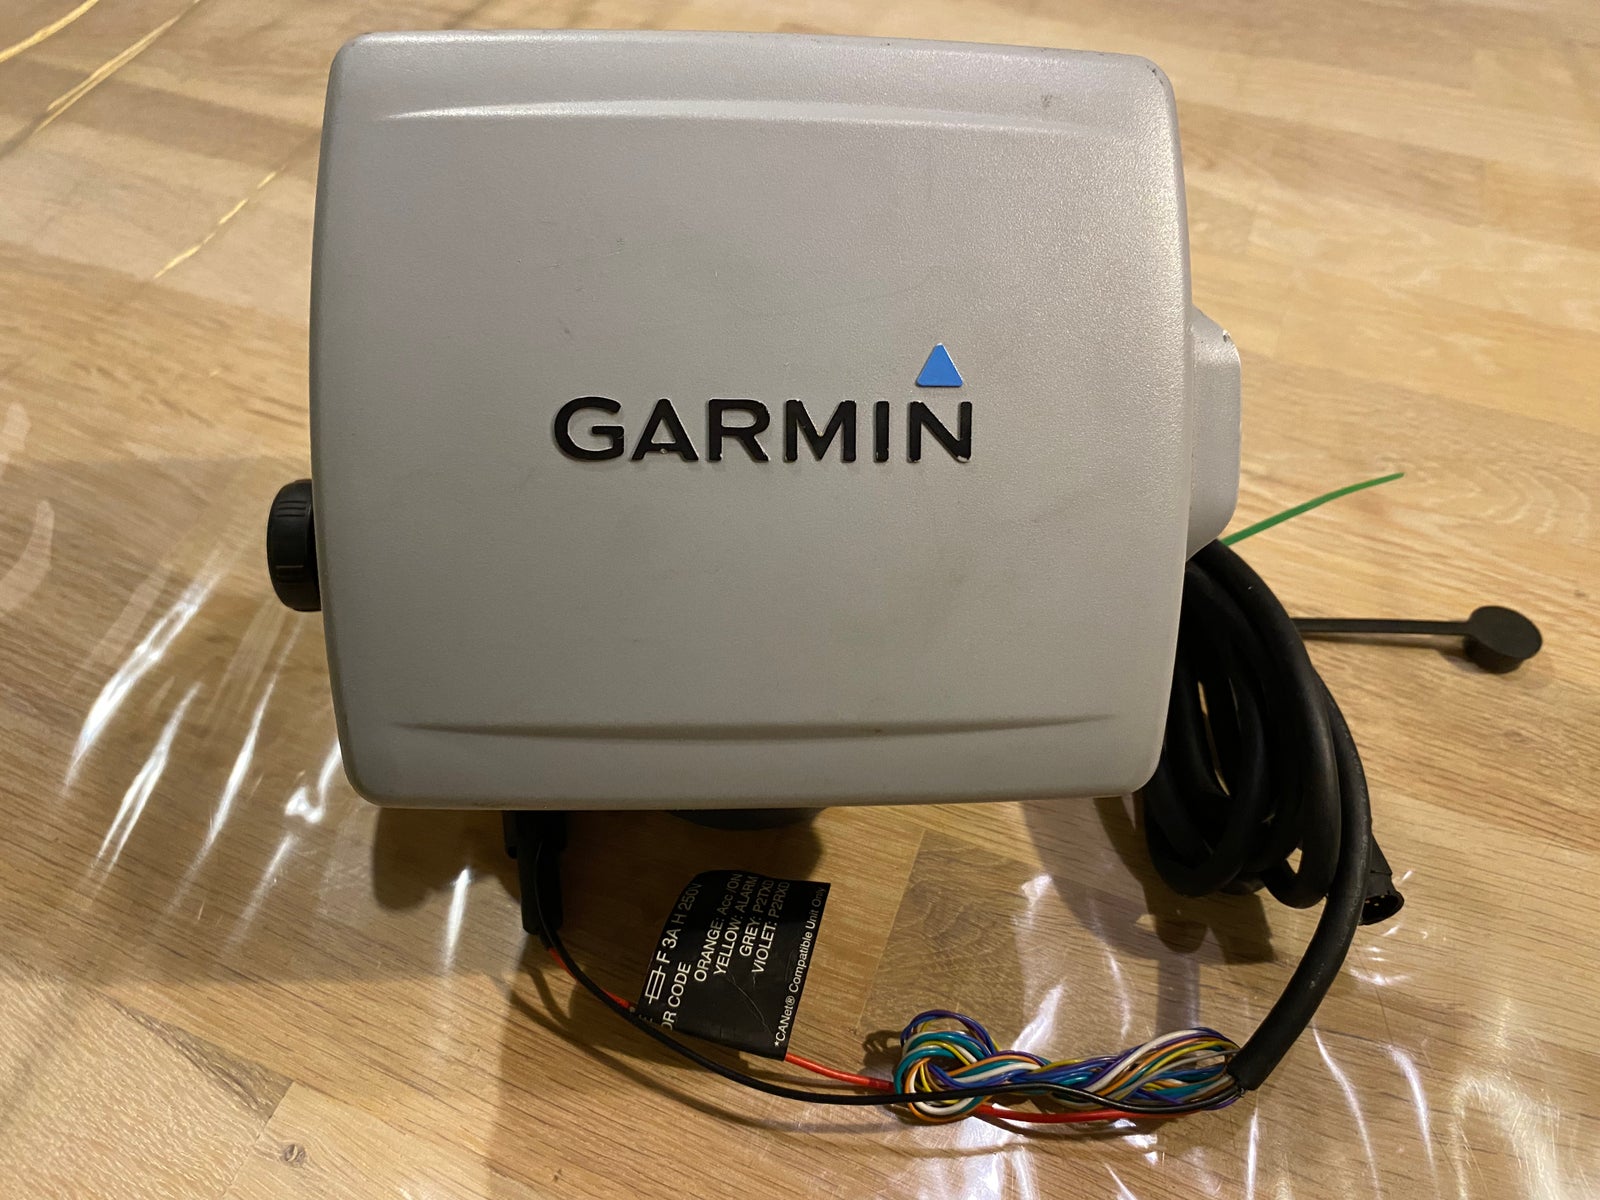 Garmin Fishfinder 400C ekkolod,
incl. kabel, co...